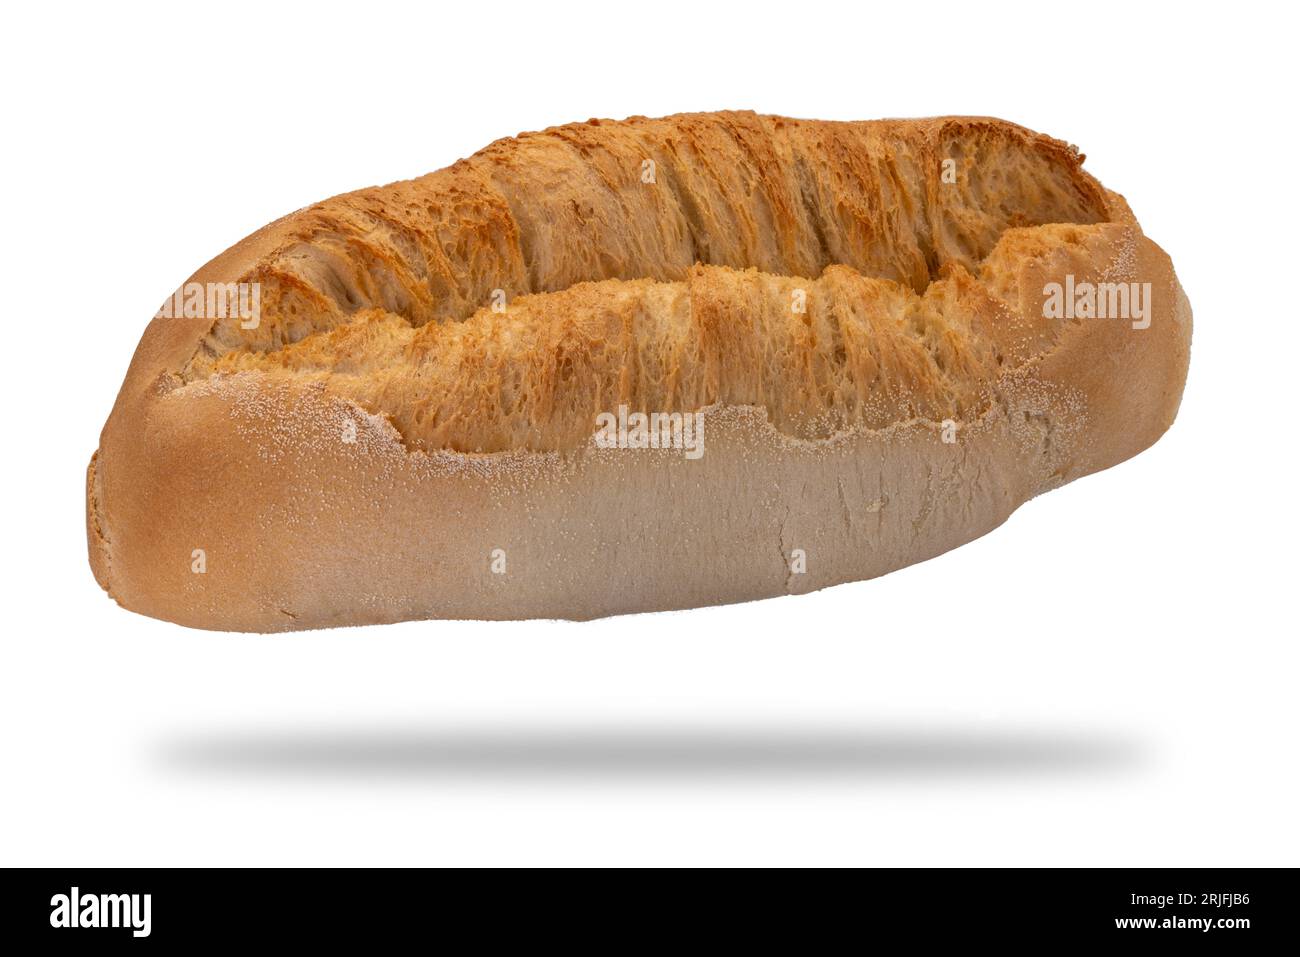 Italienischer Brotlaib, eine Art Brot aus dem Piemont, genannt Paesana. Isoliert auf weiß mit Beschneidungspfad enthalten Stockfoto